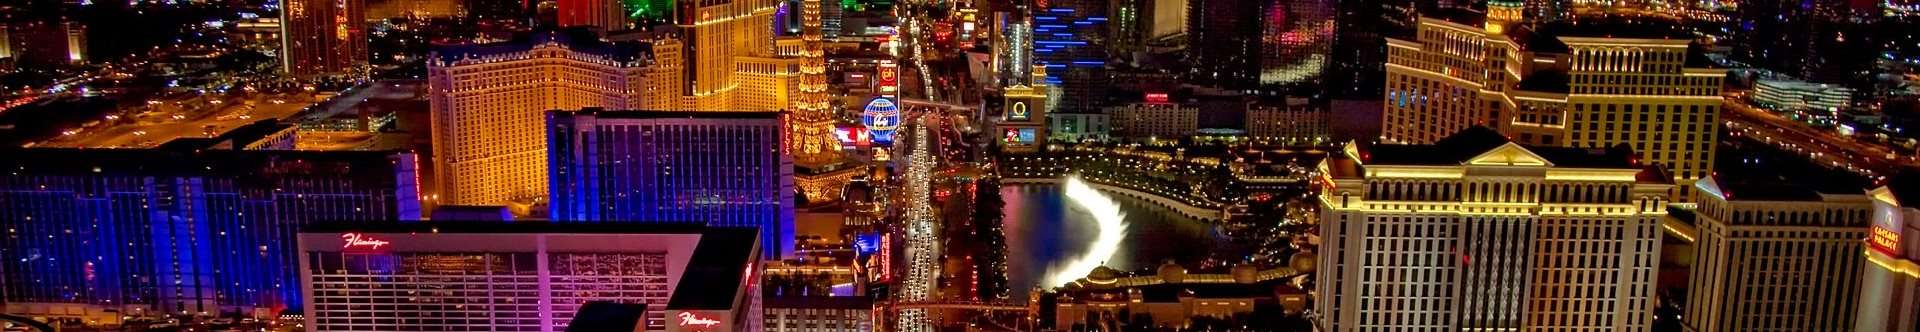 USA Nevada Las Vegas